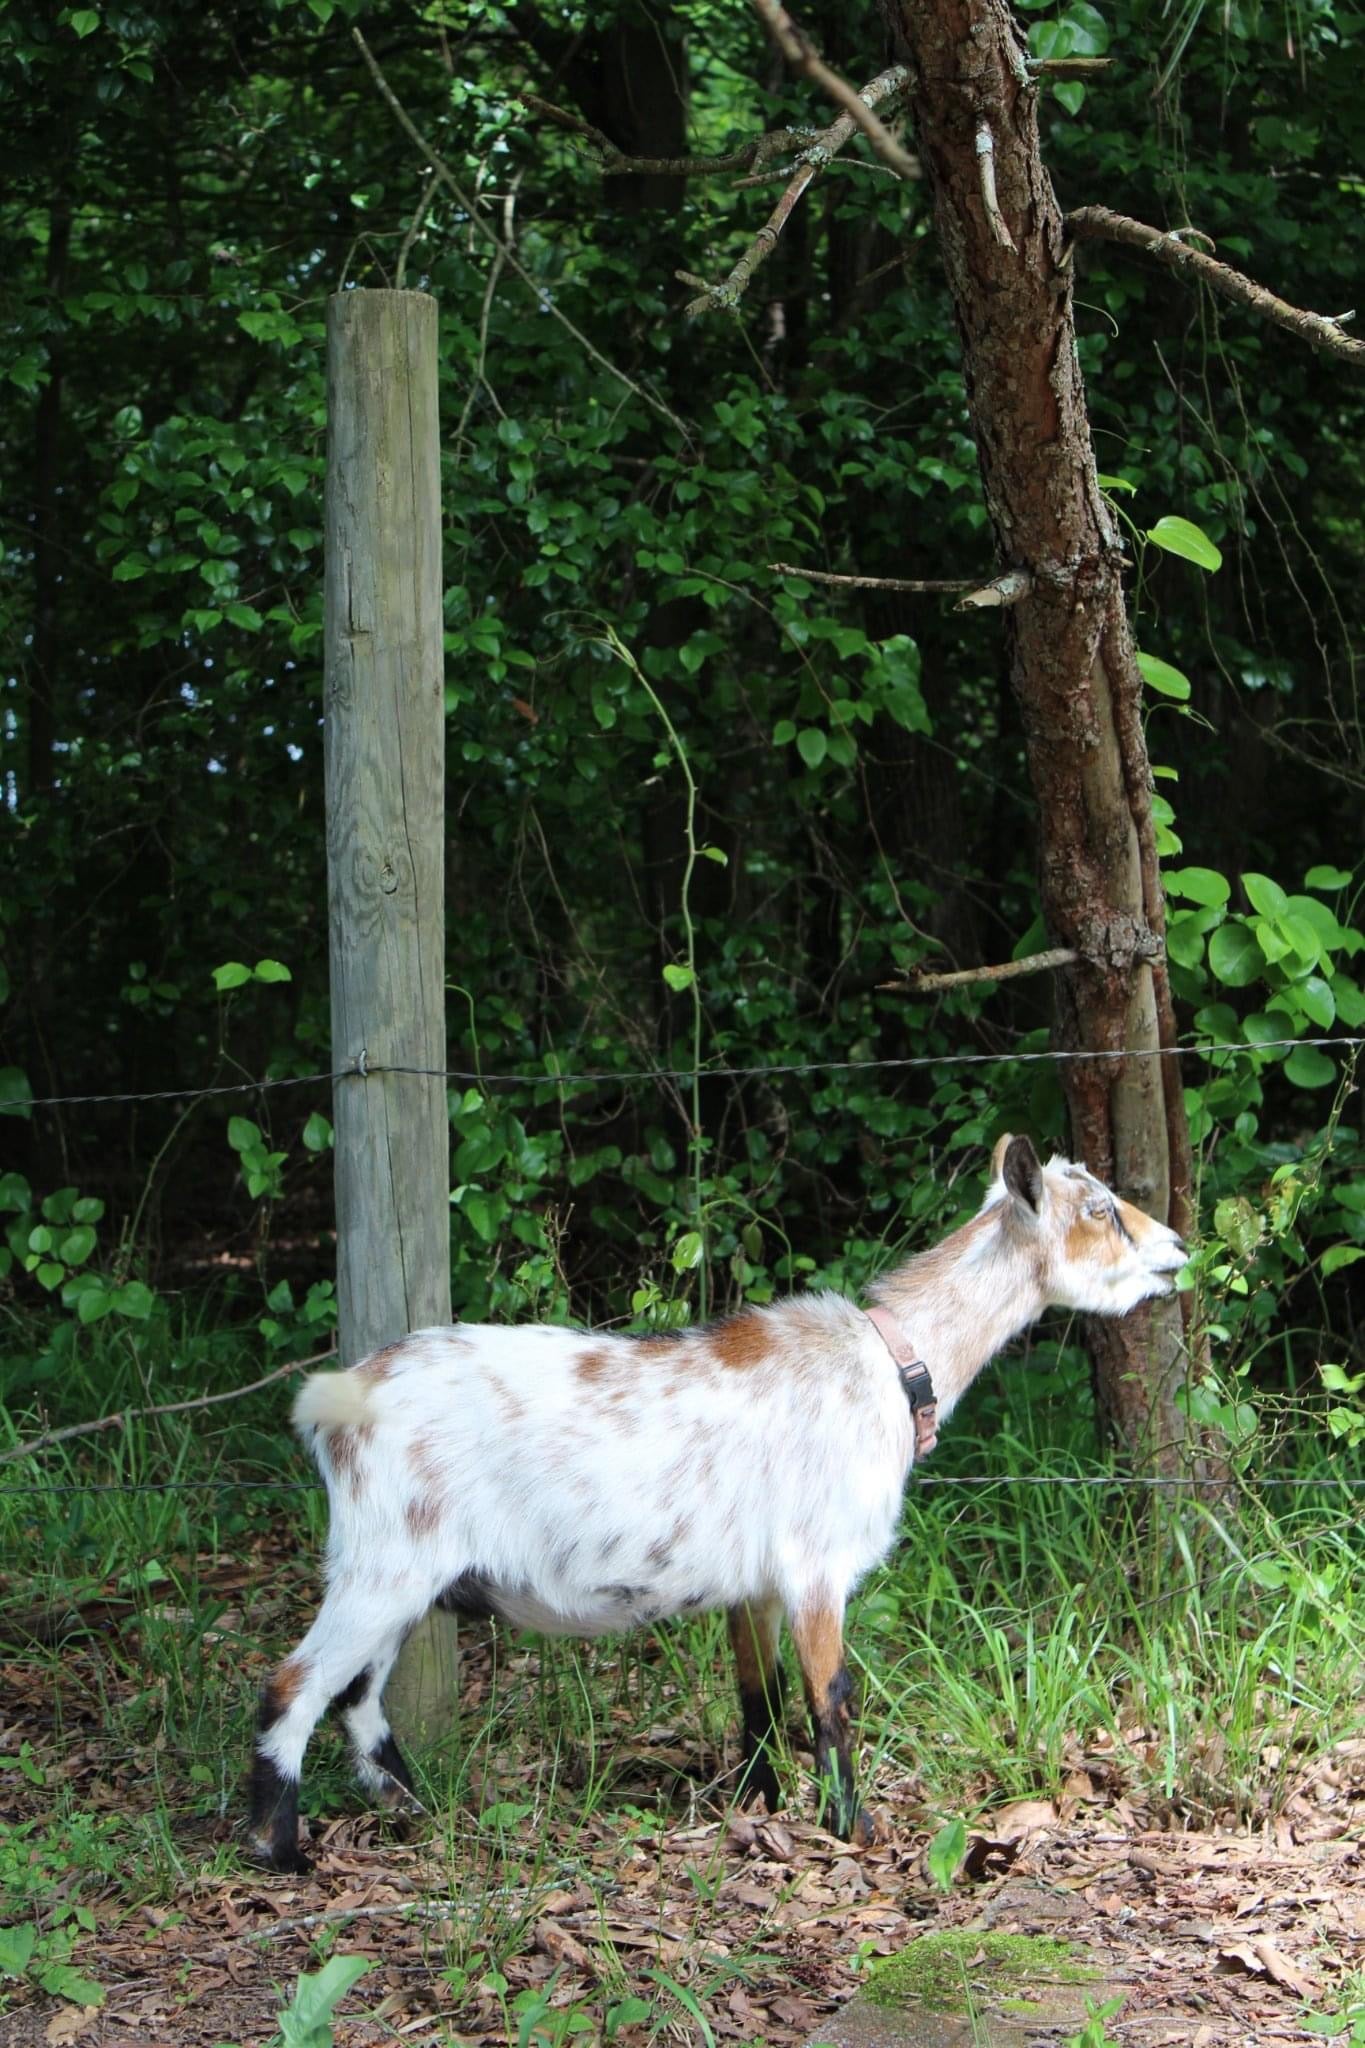 Goat Milk Soap Sampler — Rebels' Roost Farm & Apiary